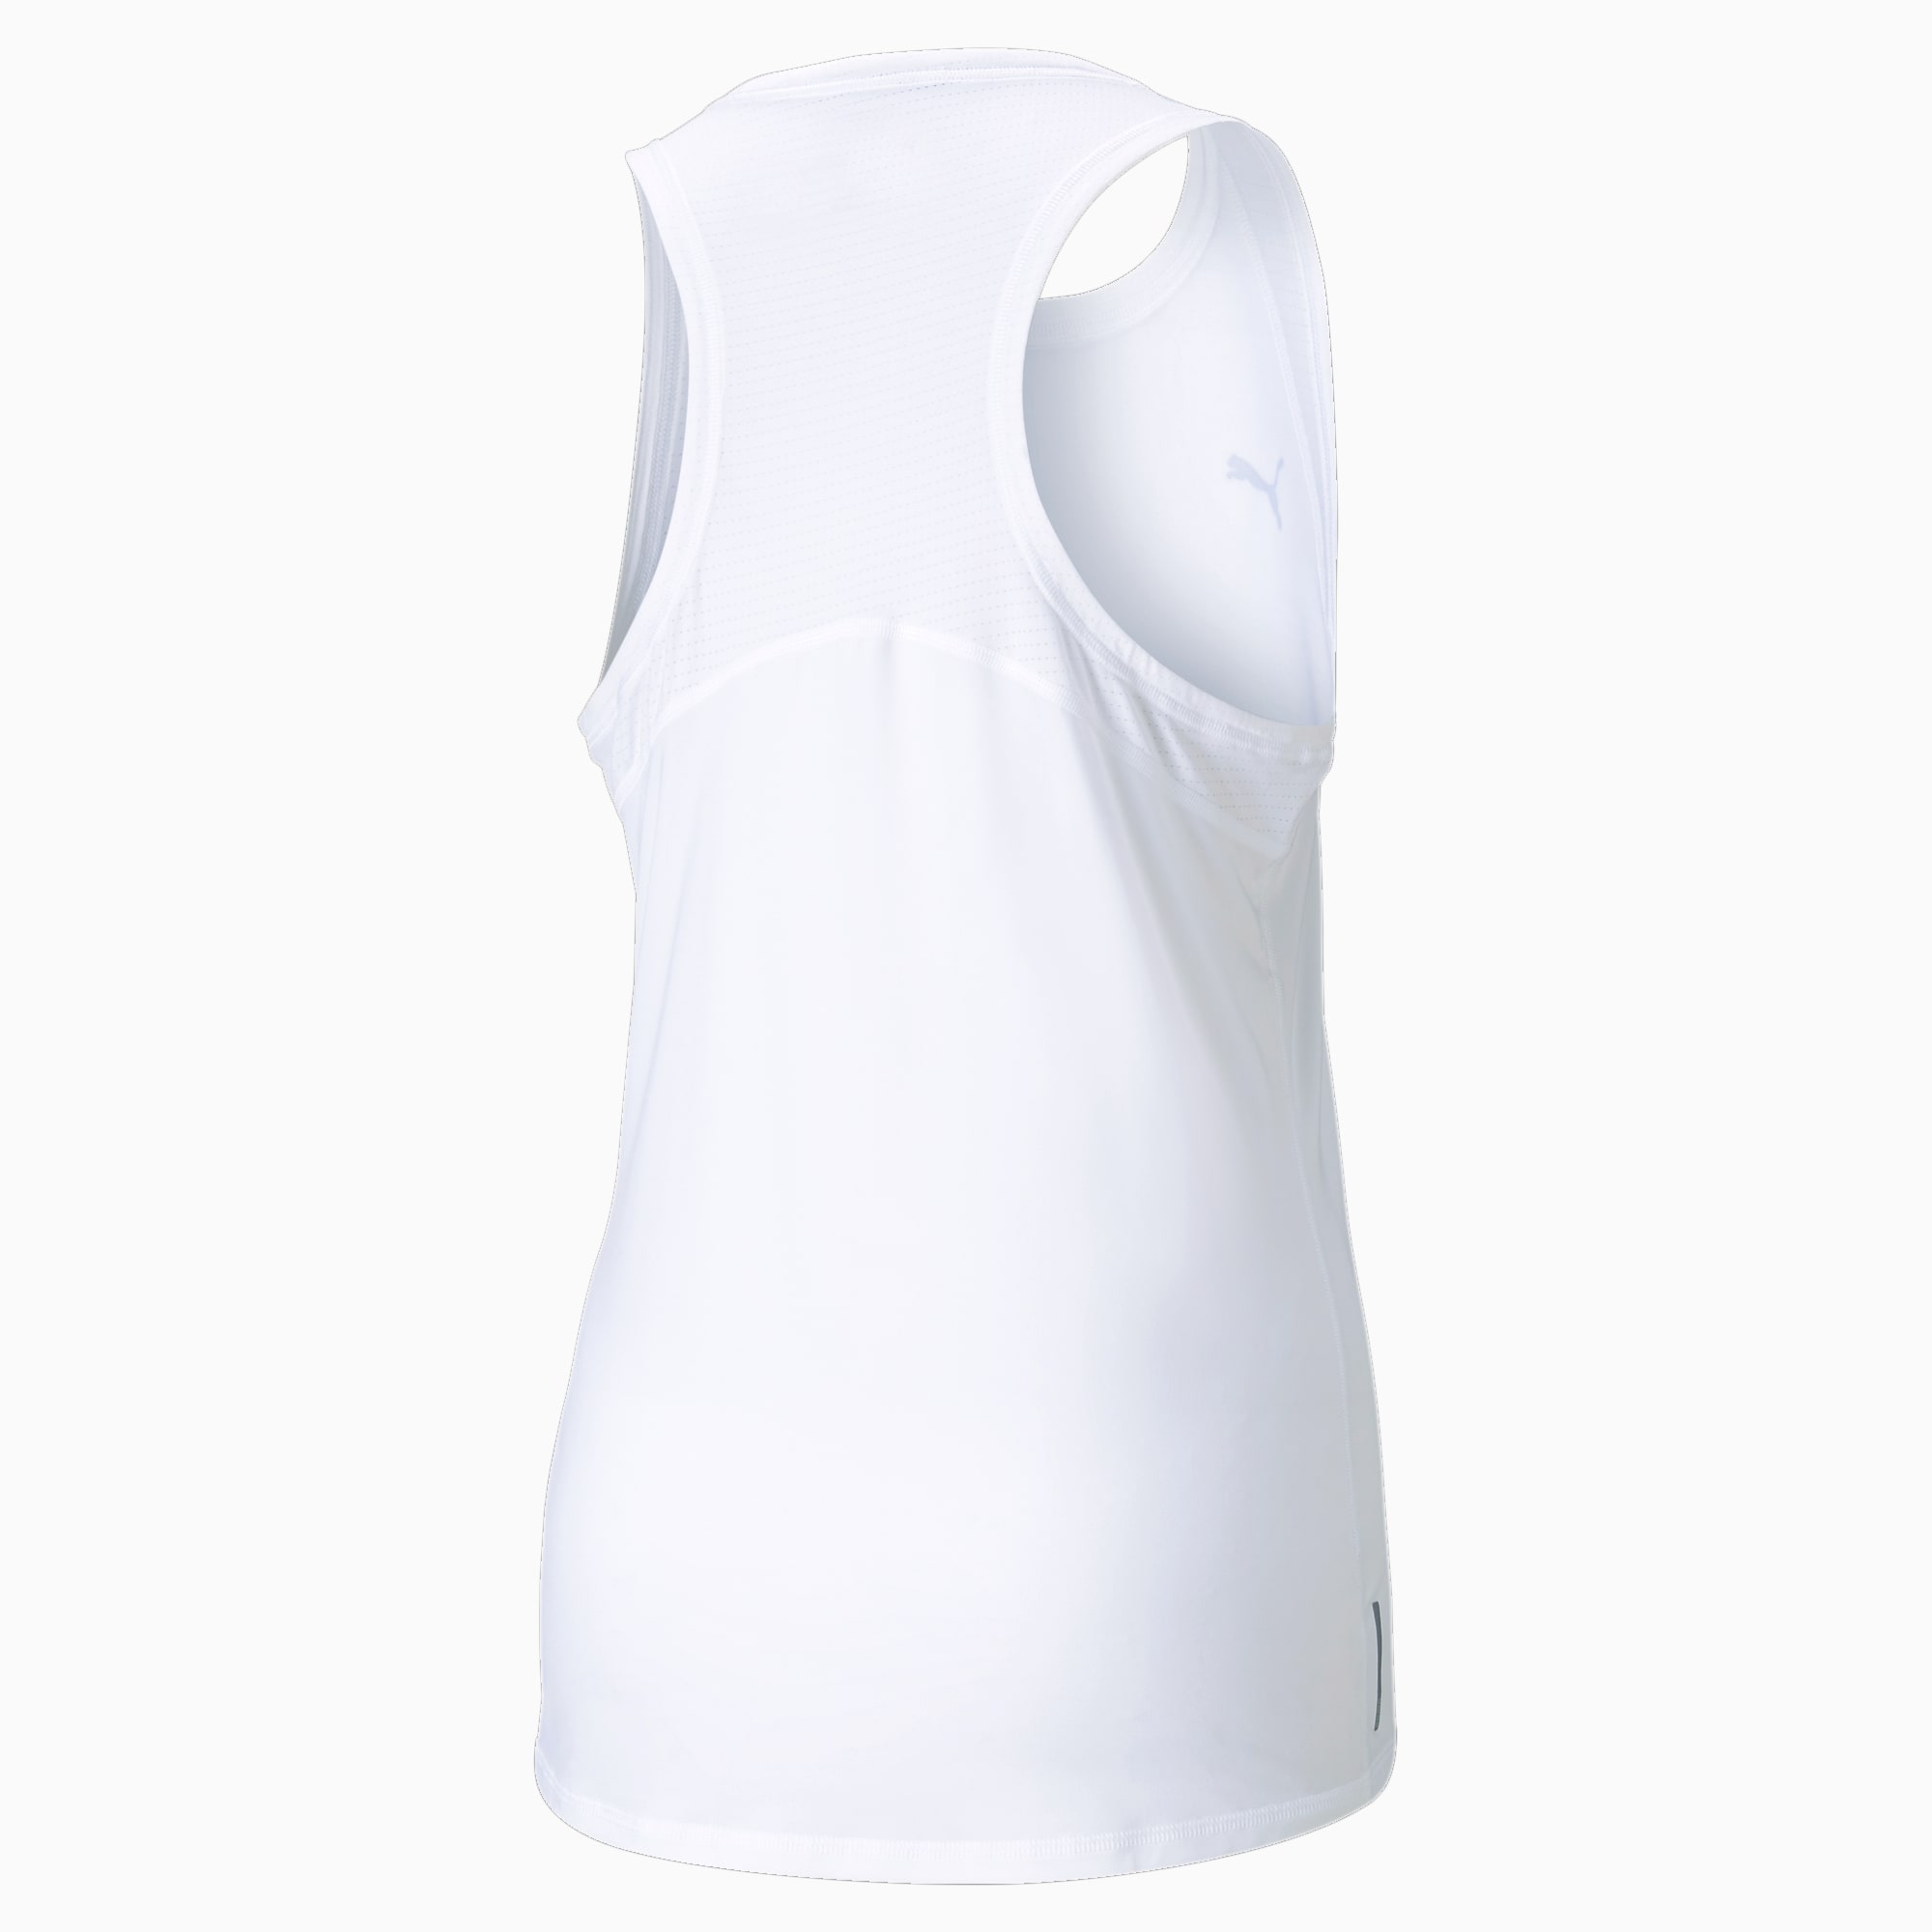 PUMA Favourite Damen Trainings-Tank-Top, Weiß, Größe: S, Kleidung